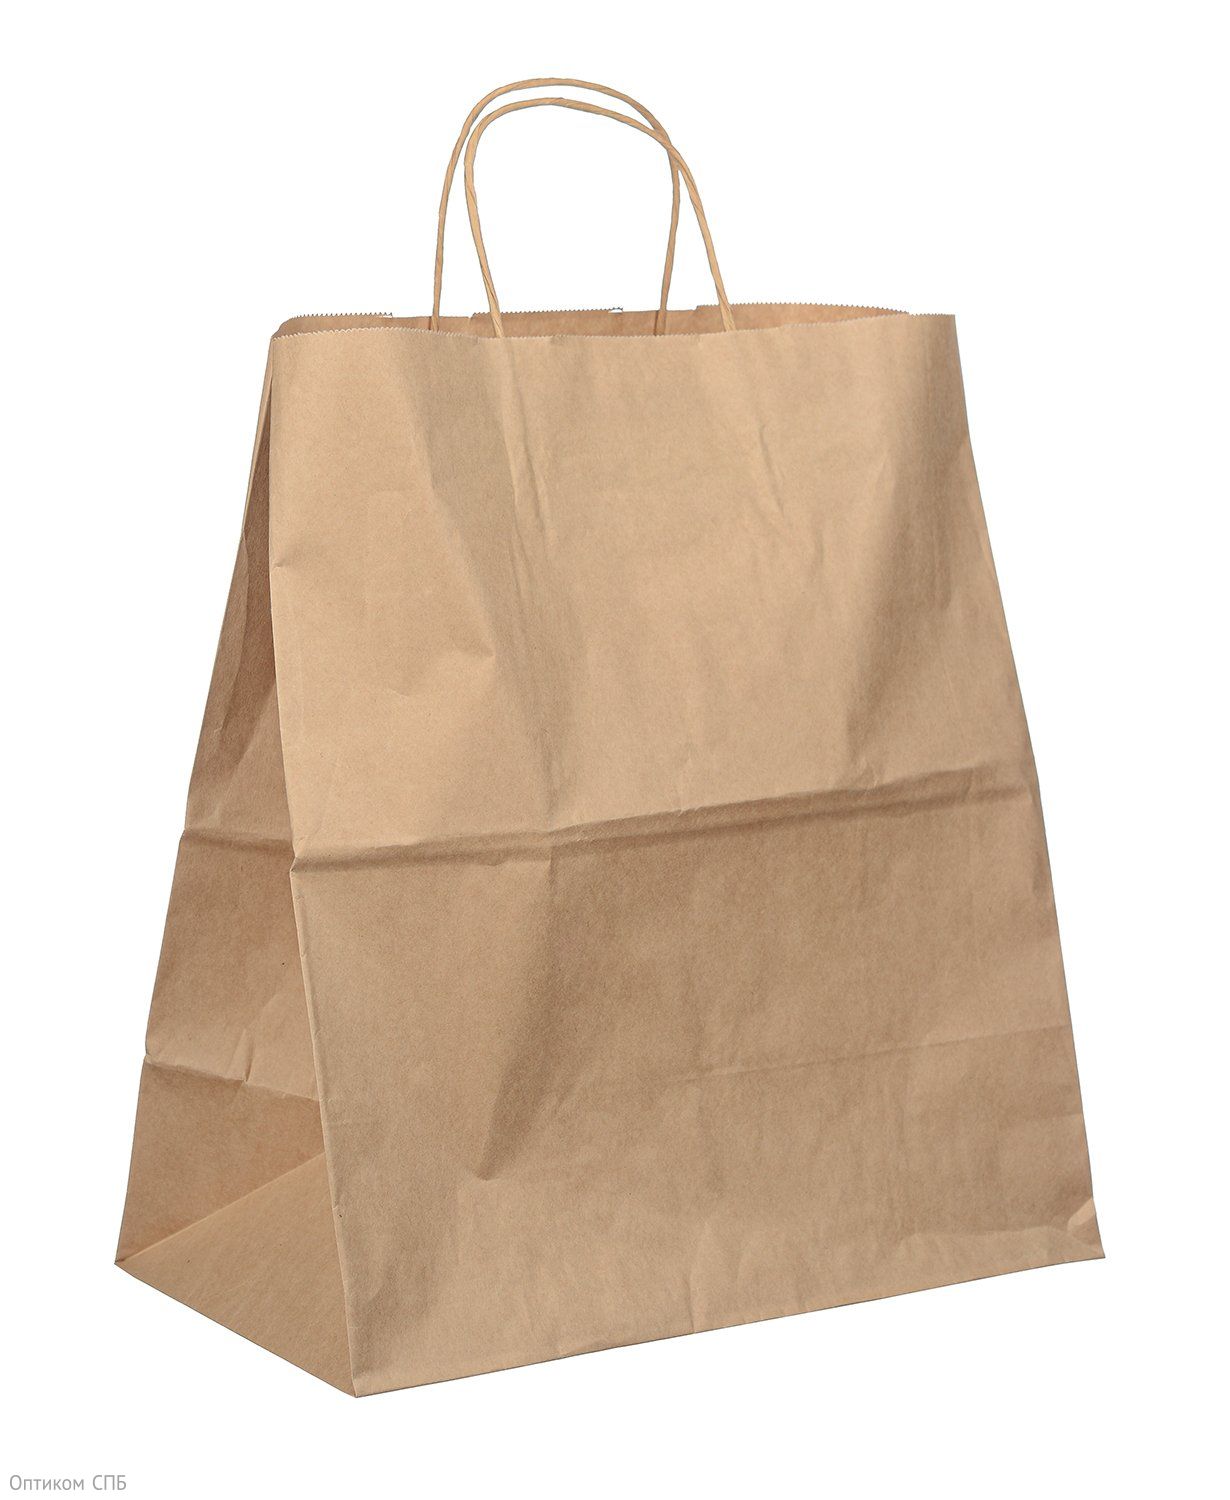 Бумажный крафт пакет-сумка с крученными ручками отлично подходит для пищевых продуктов и бытовых товаров. Благодаря плотной бумаге 70 г/м2, пакет обладает высокой прочностью и отлично держит форму. Размер пакета 32х37 см, ширина бокового фальца 18 см. В упаковке 250 штук.